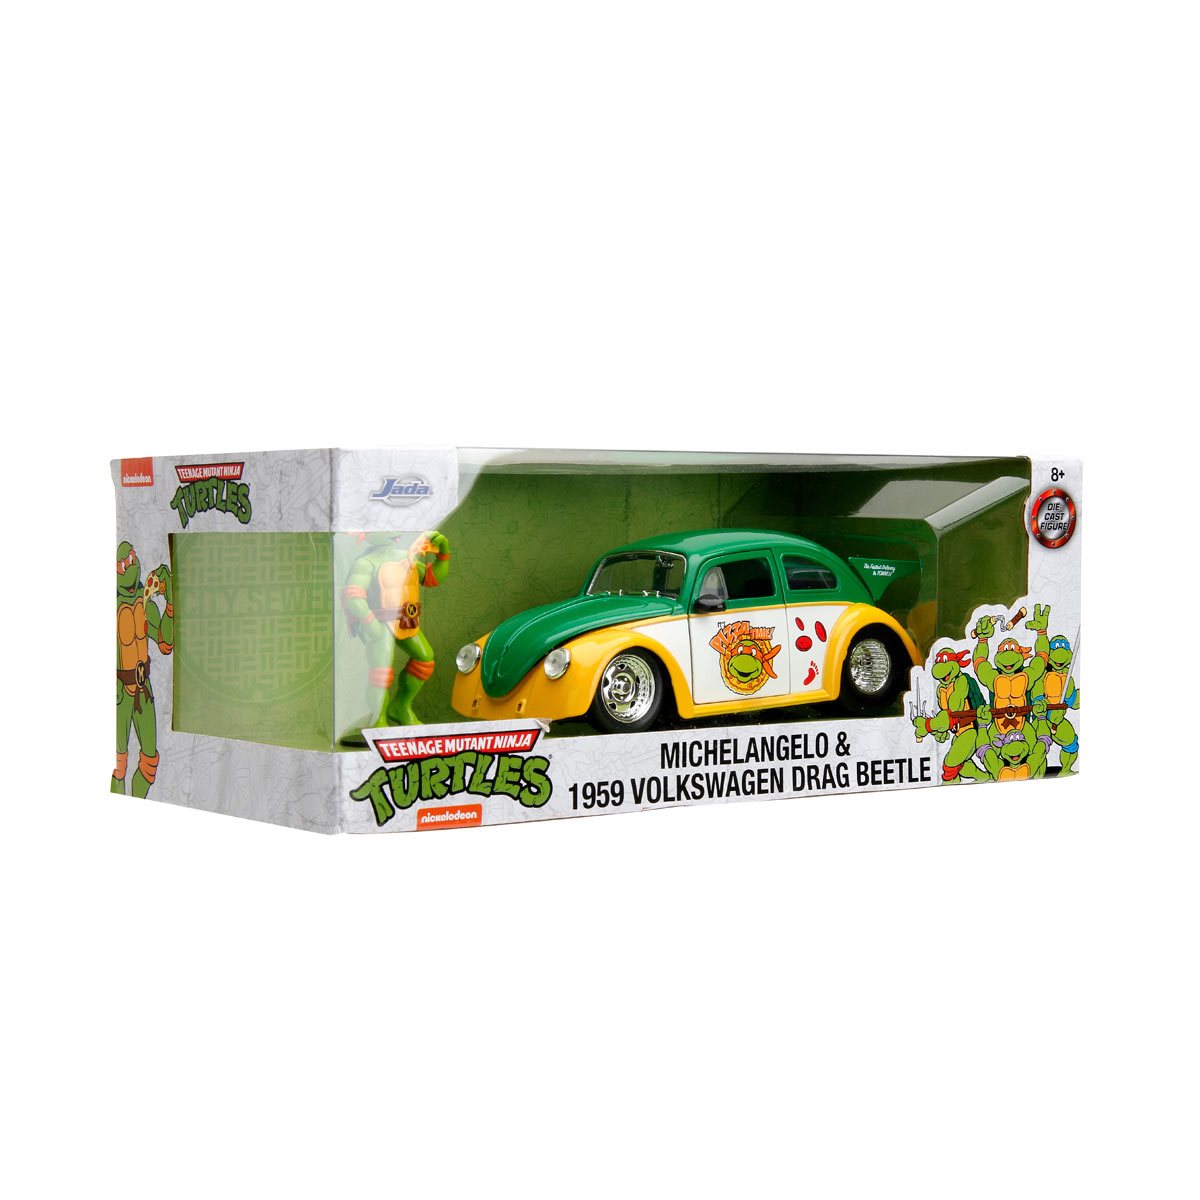 Teenage Mutant Ninja Turtles - Volkswagen Beetle 1:24 Scale Die-Cast Metal Vehicle with Michelangelo Figure